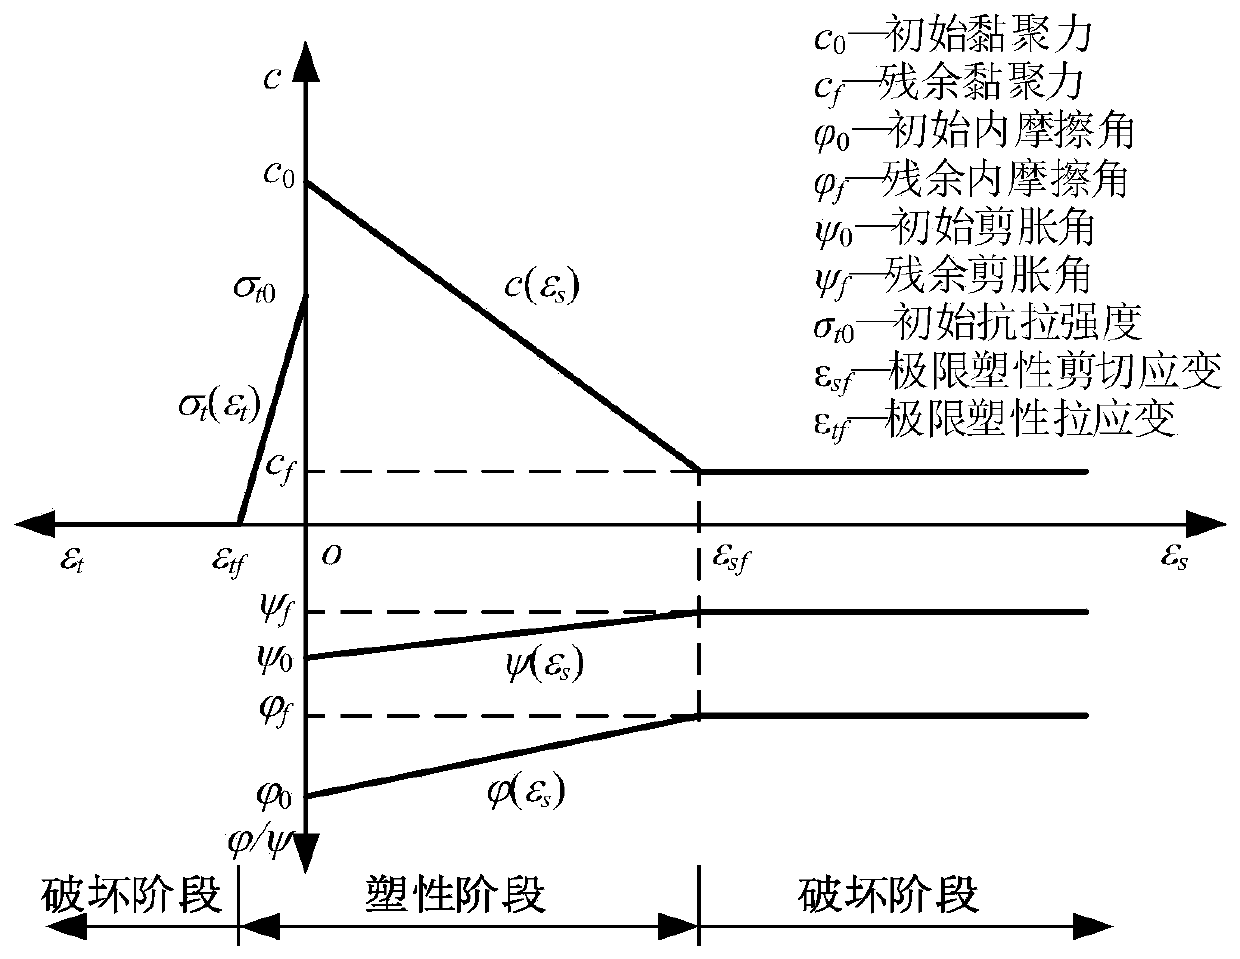 Earthquake slope stability analysis method considering sliding surface dynamic progressive damage